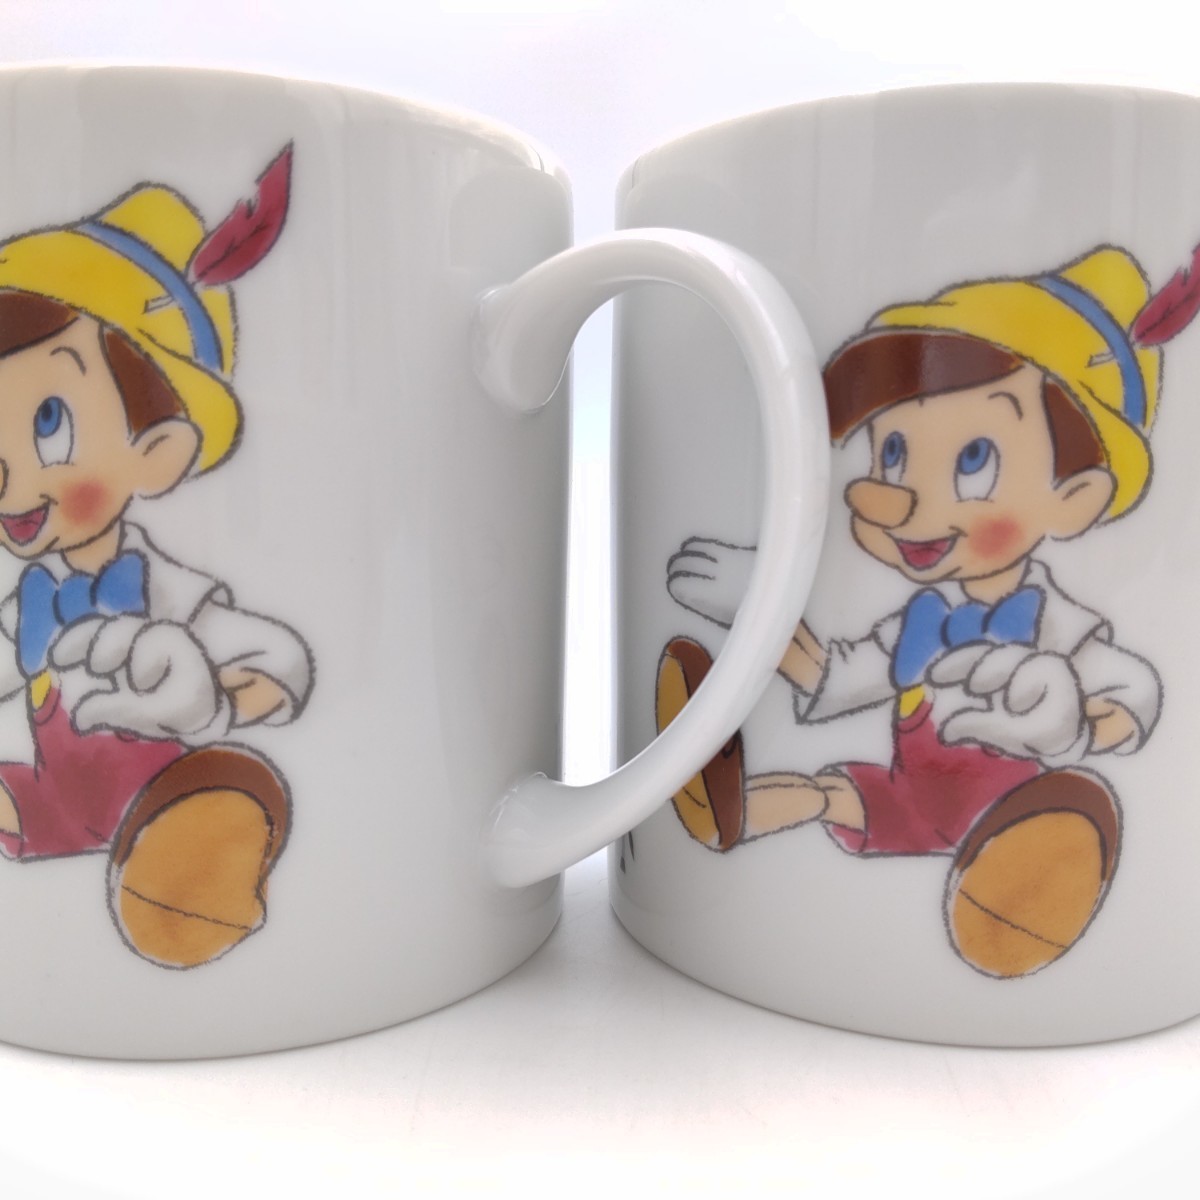 ディズニー ピノキオ マグカップ 2個 Walt Disney Pinocchio mug Sony Creative Products 新品 未使用 訳あり含む お買い得 箱なし_画像5